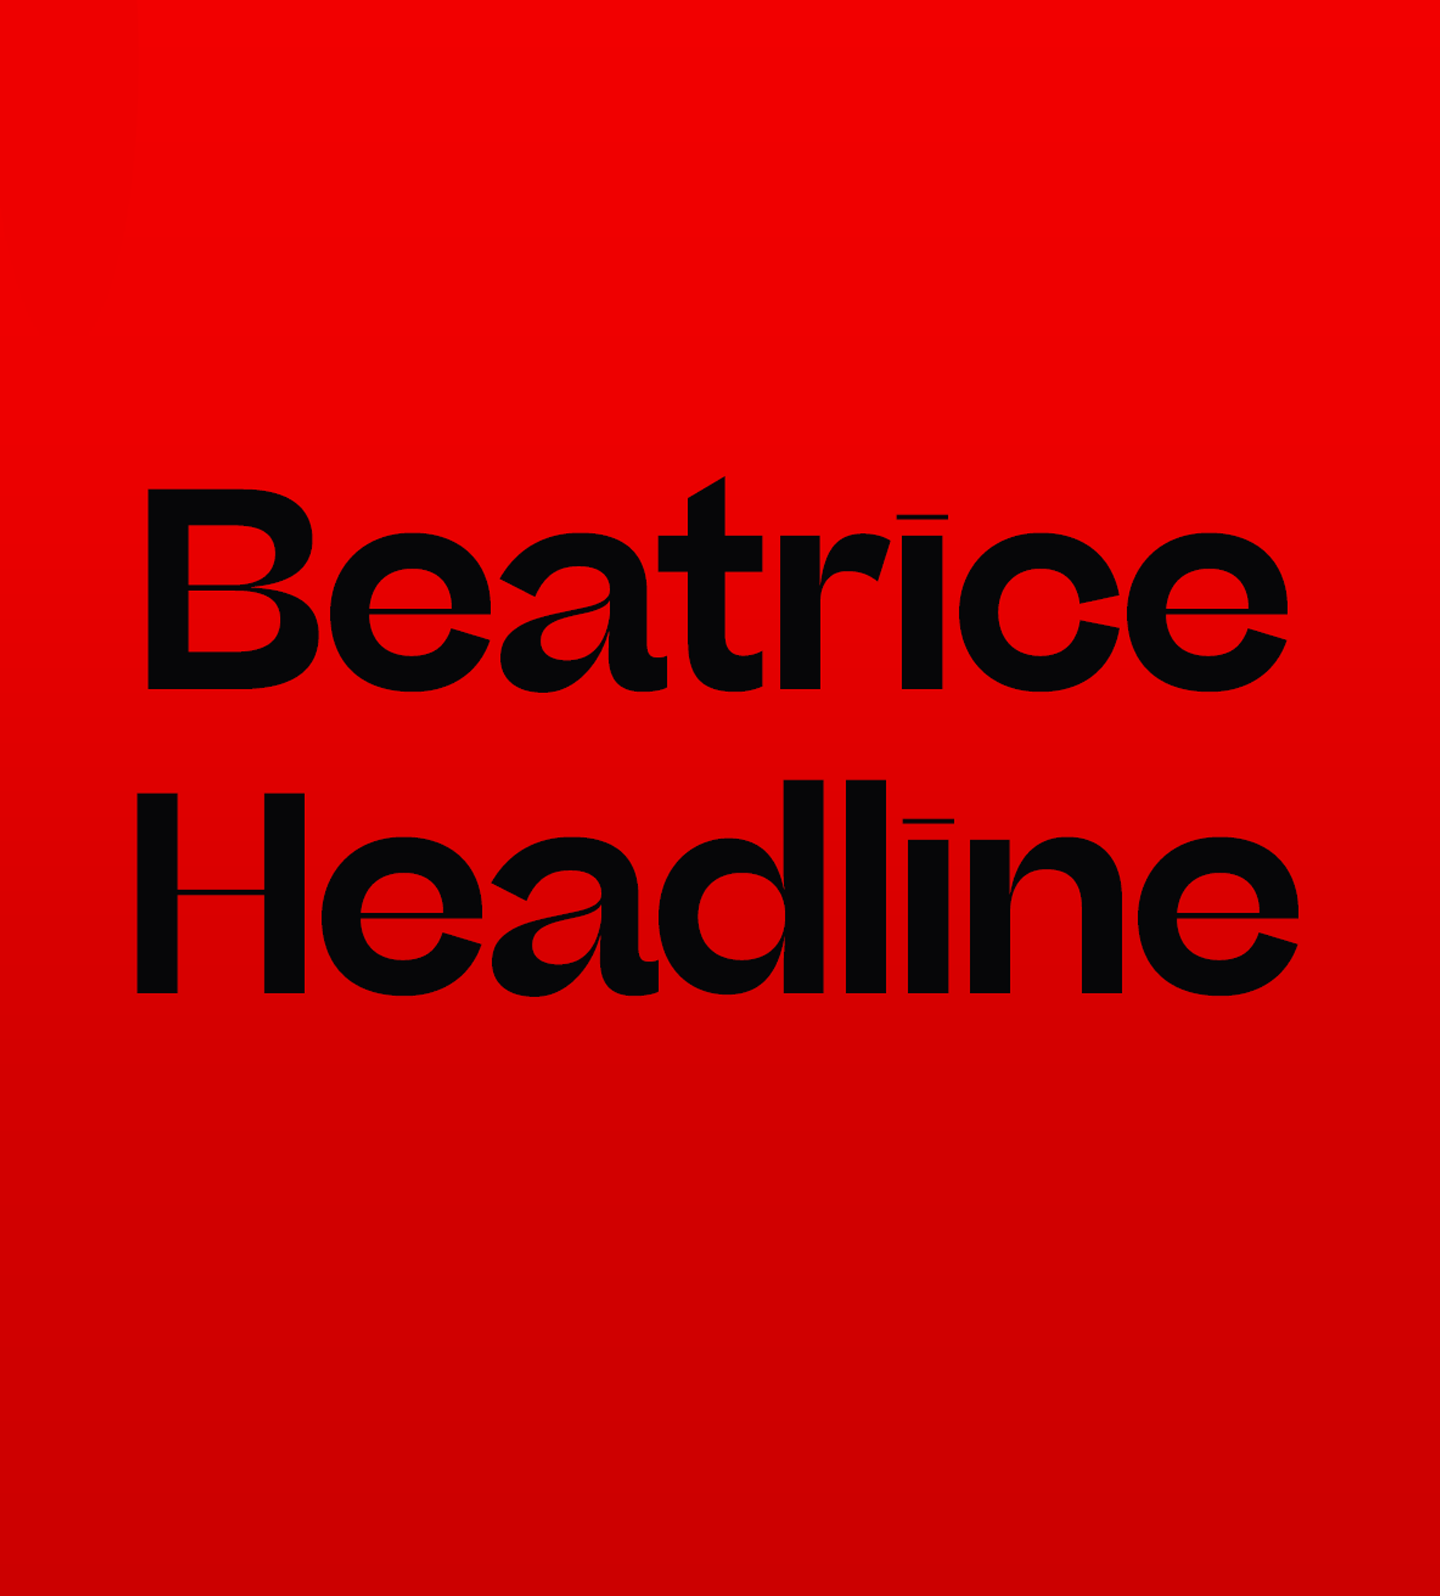 Font Beatrice Headline